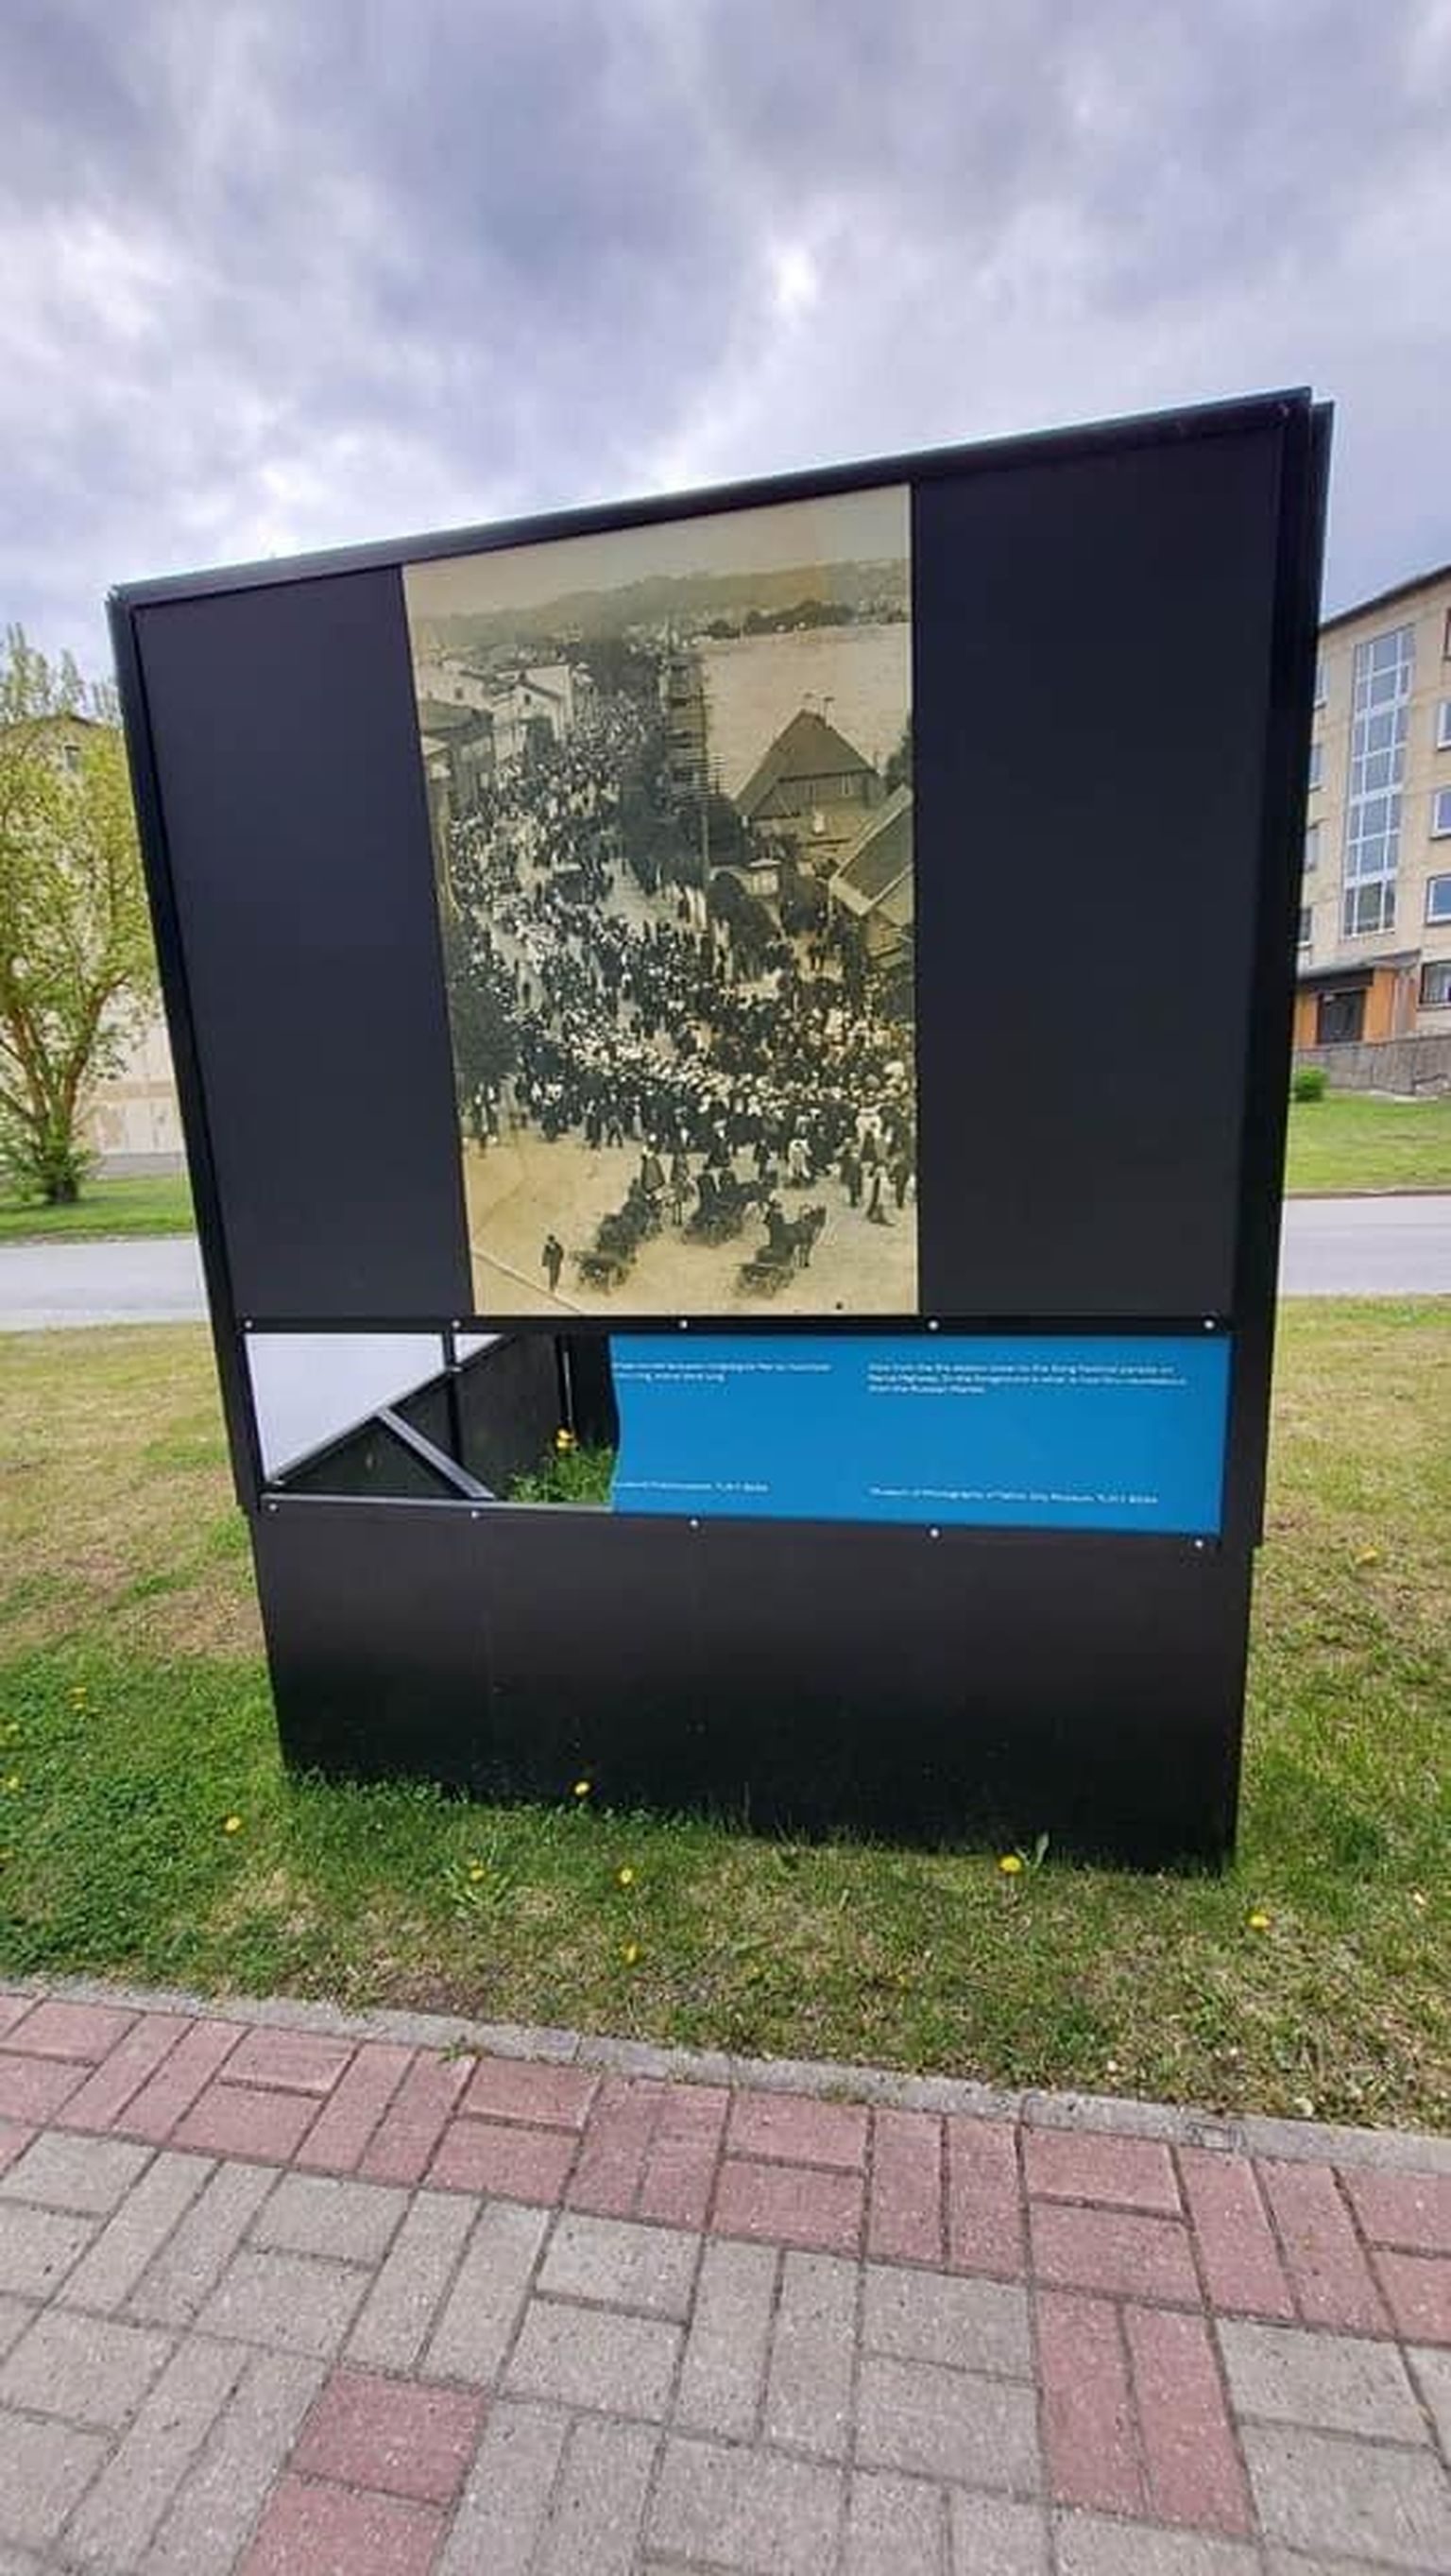 Kundas lõhuti Kasemäe tänaval seisva fotonäituse "Laulupeo teekond läbi aja" eksponaate.